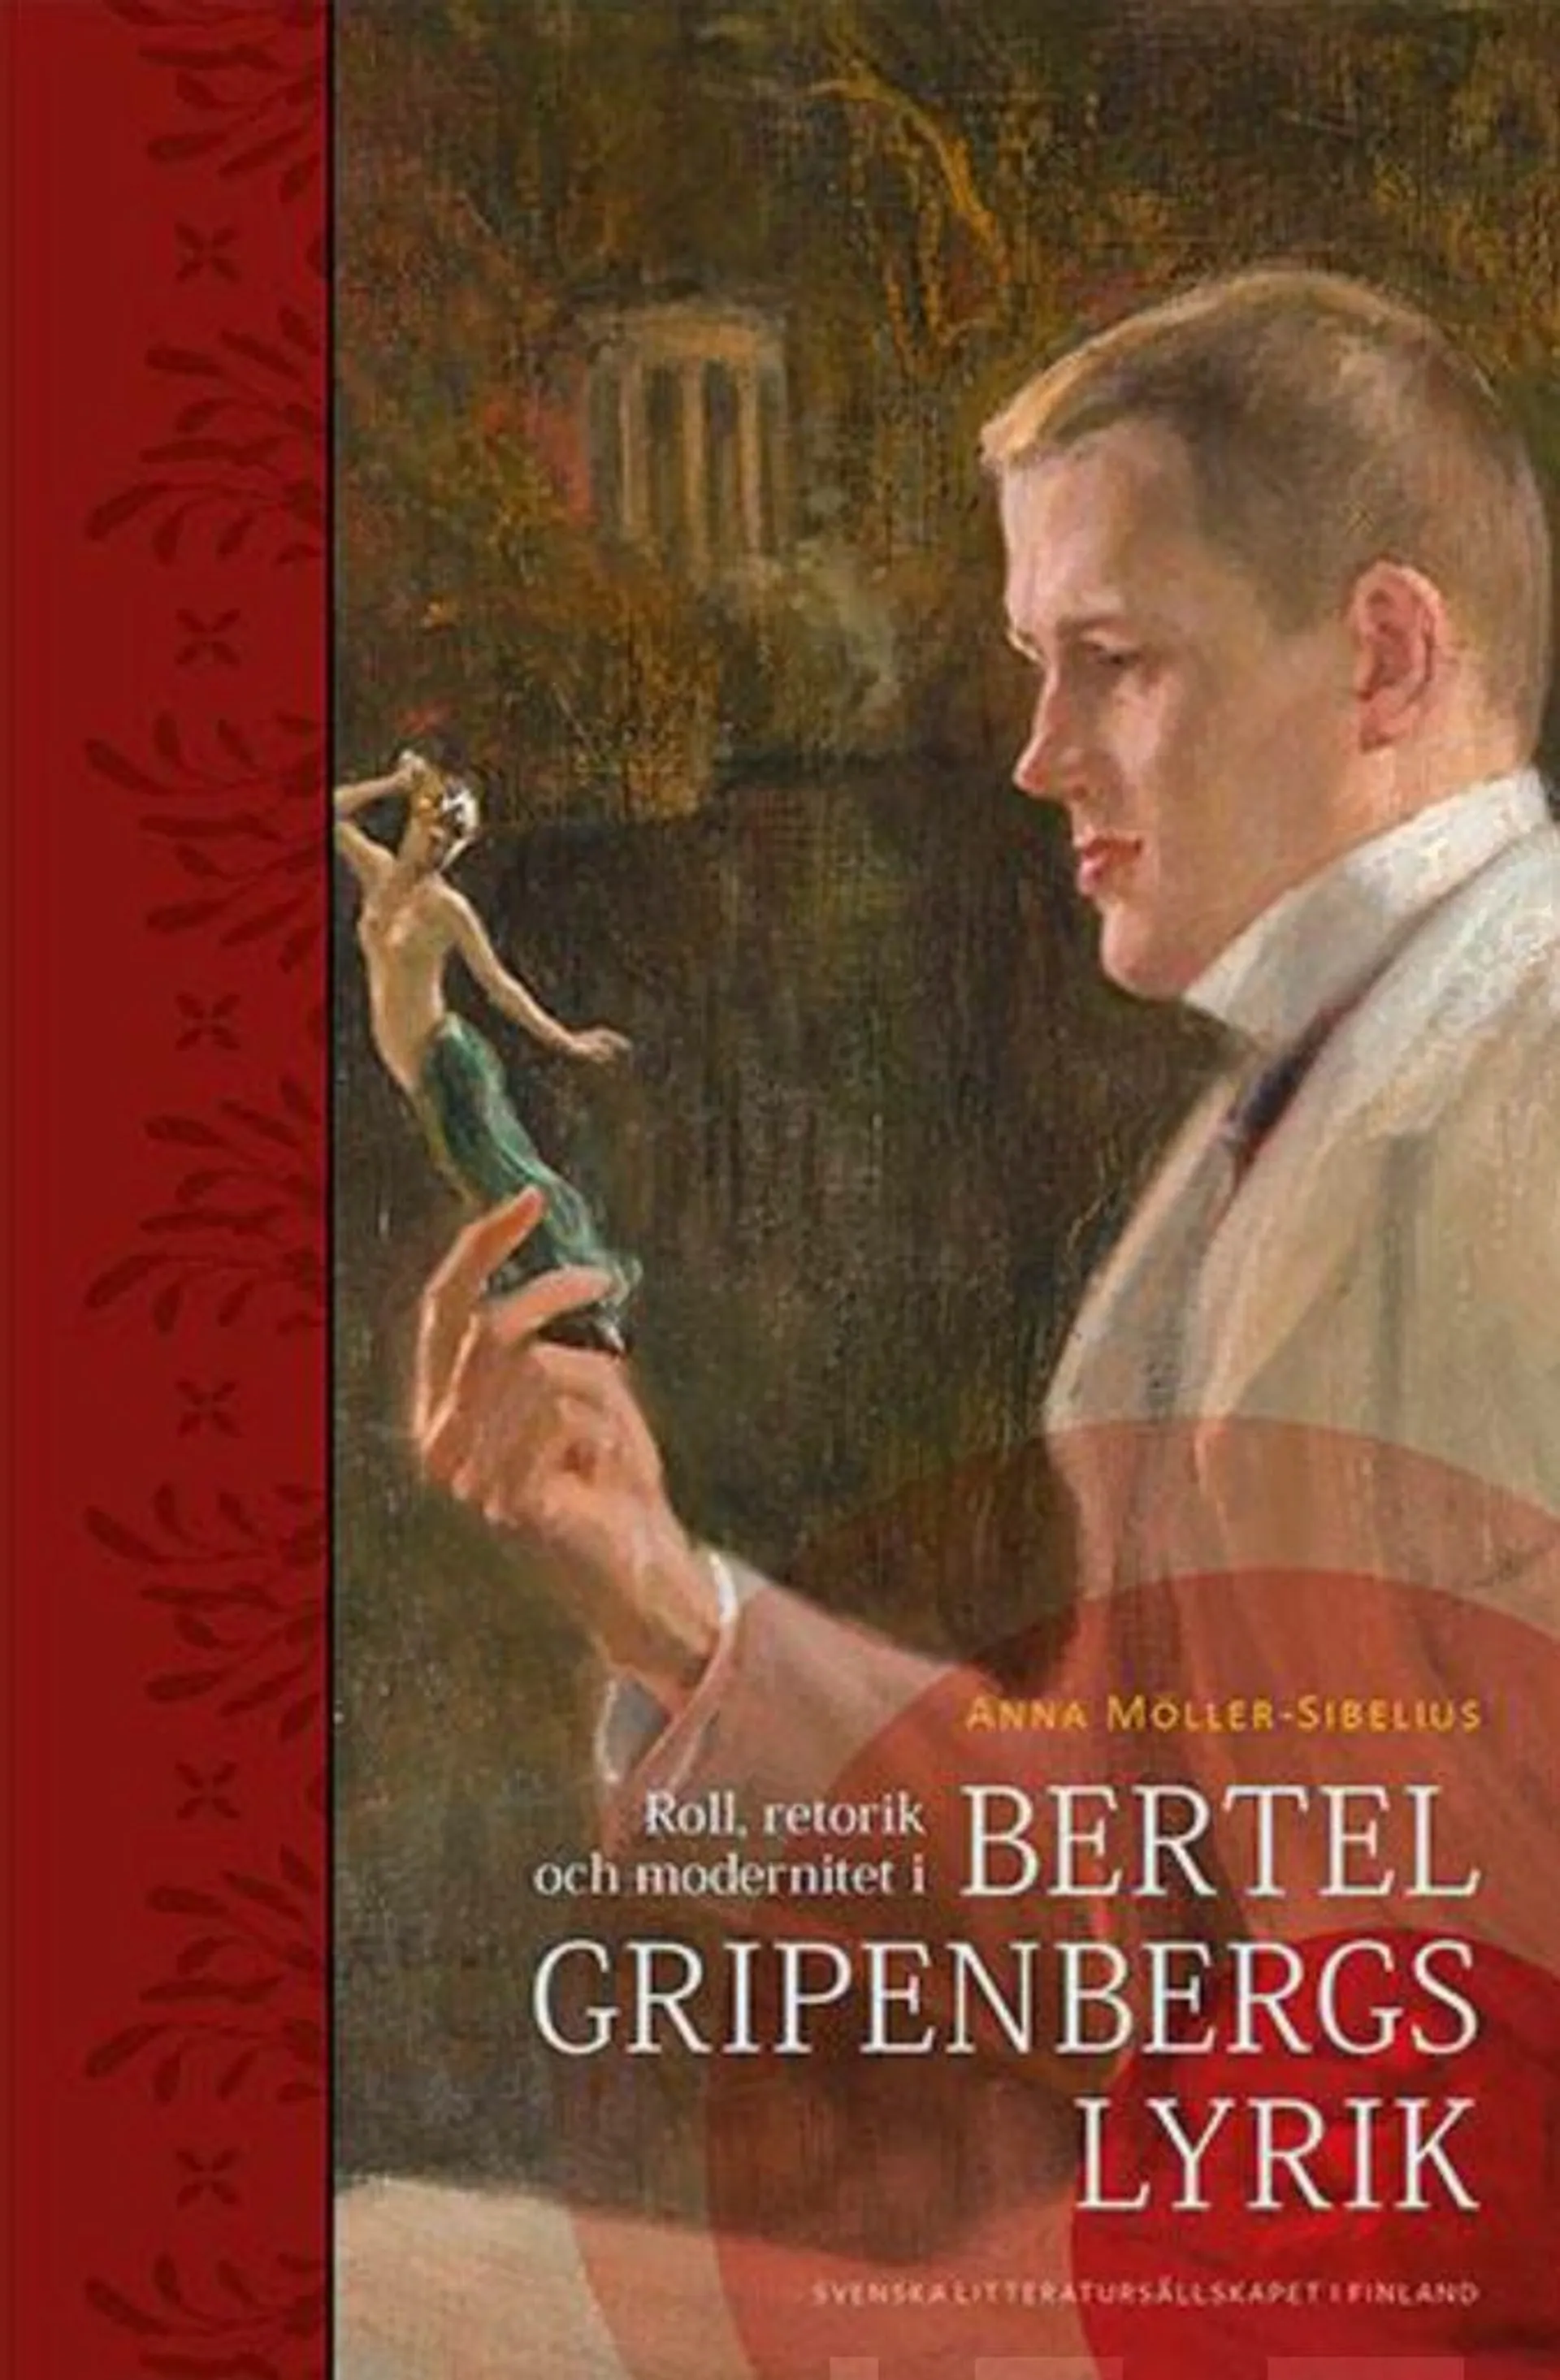 Möller-Sibelius, Roll, retorik och modernitet i Bertel Gripenbergs lyrik